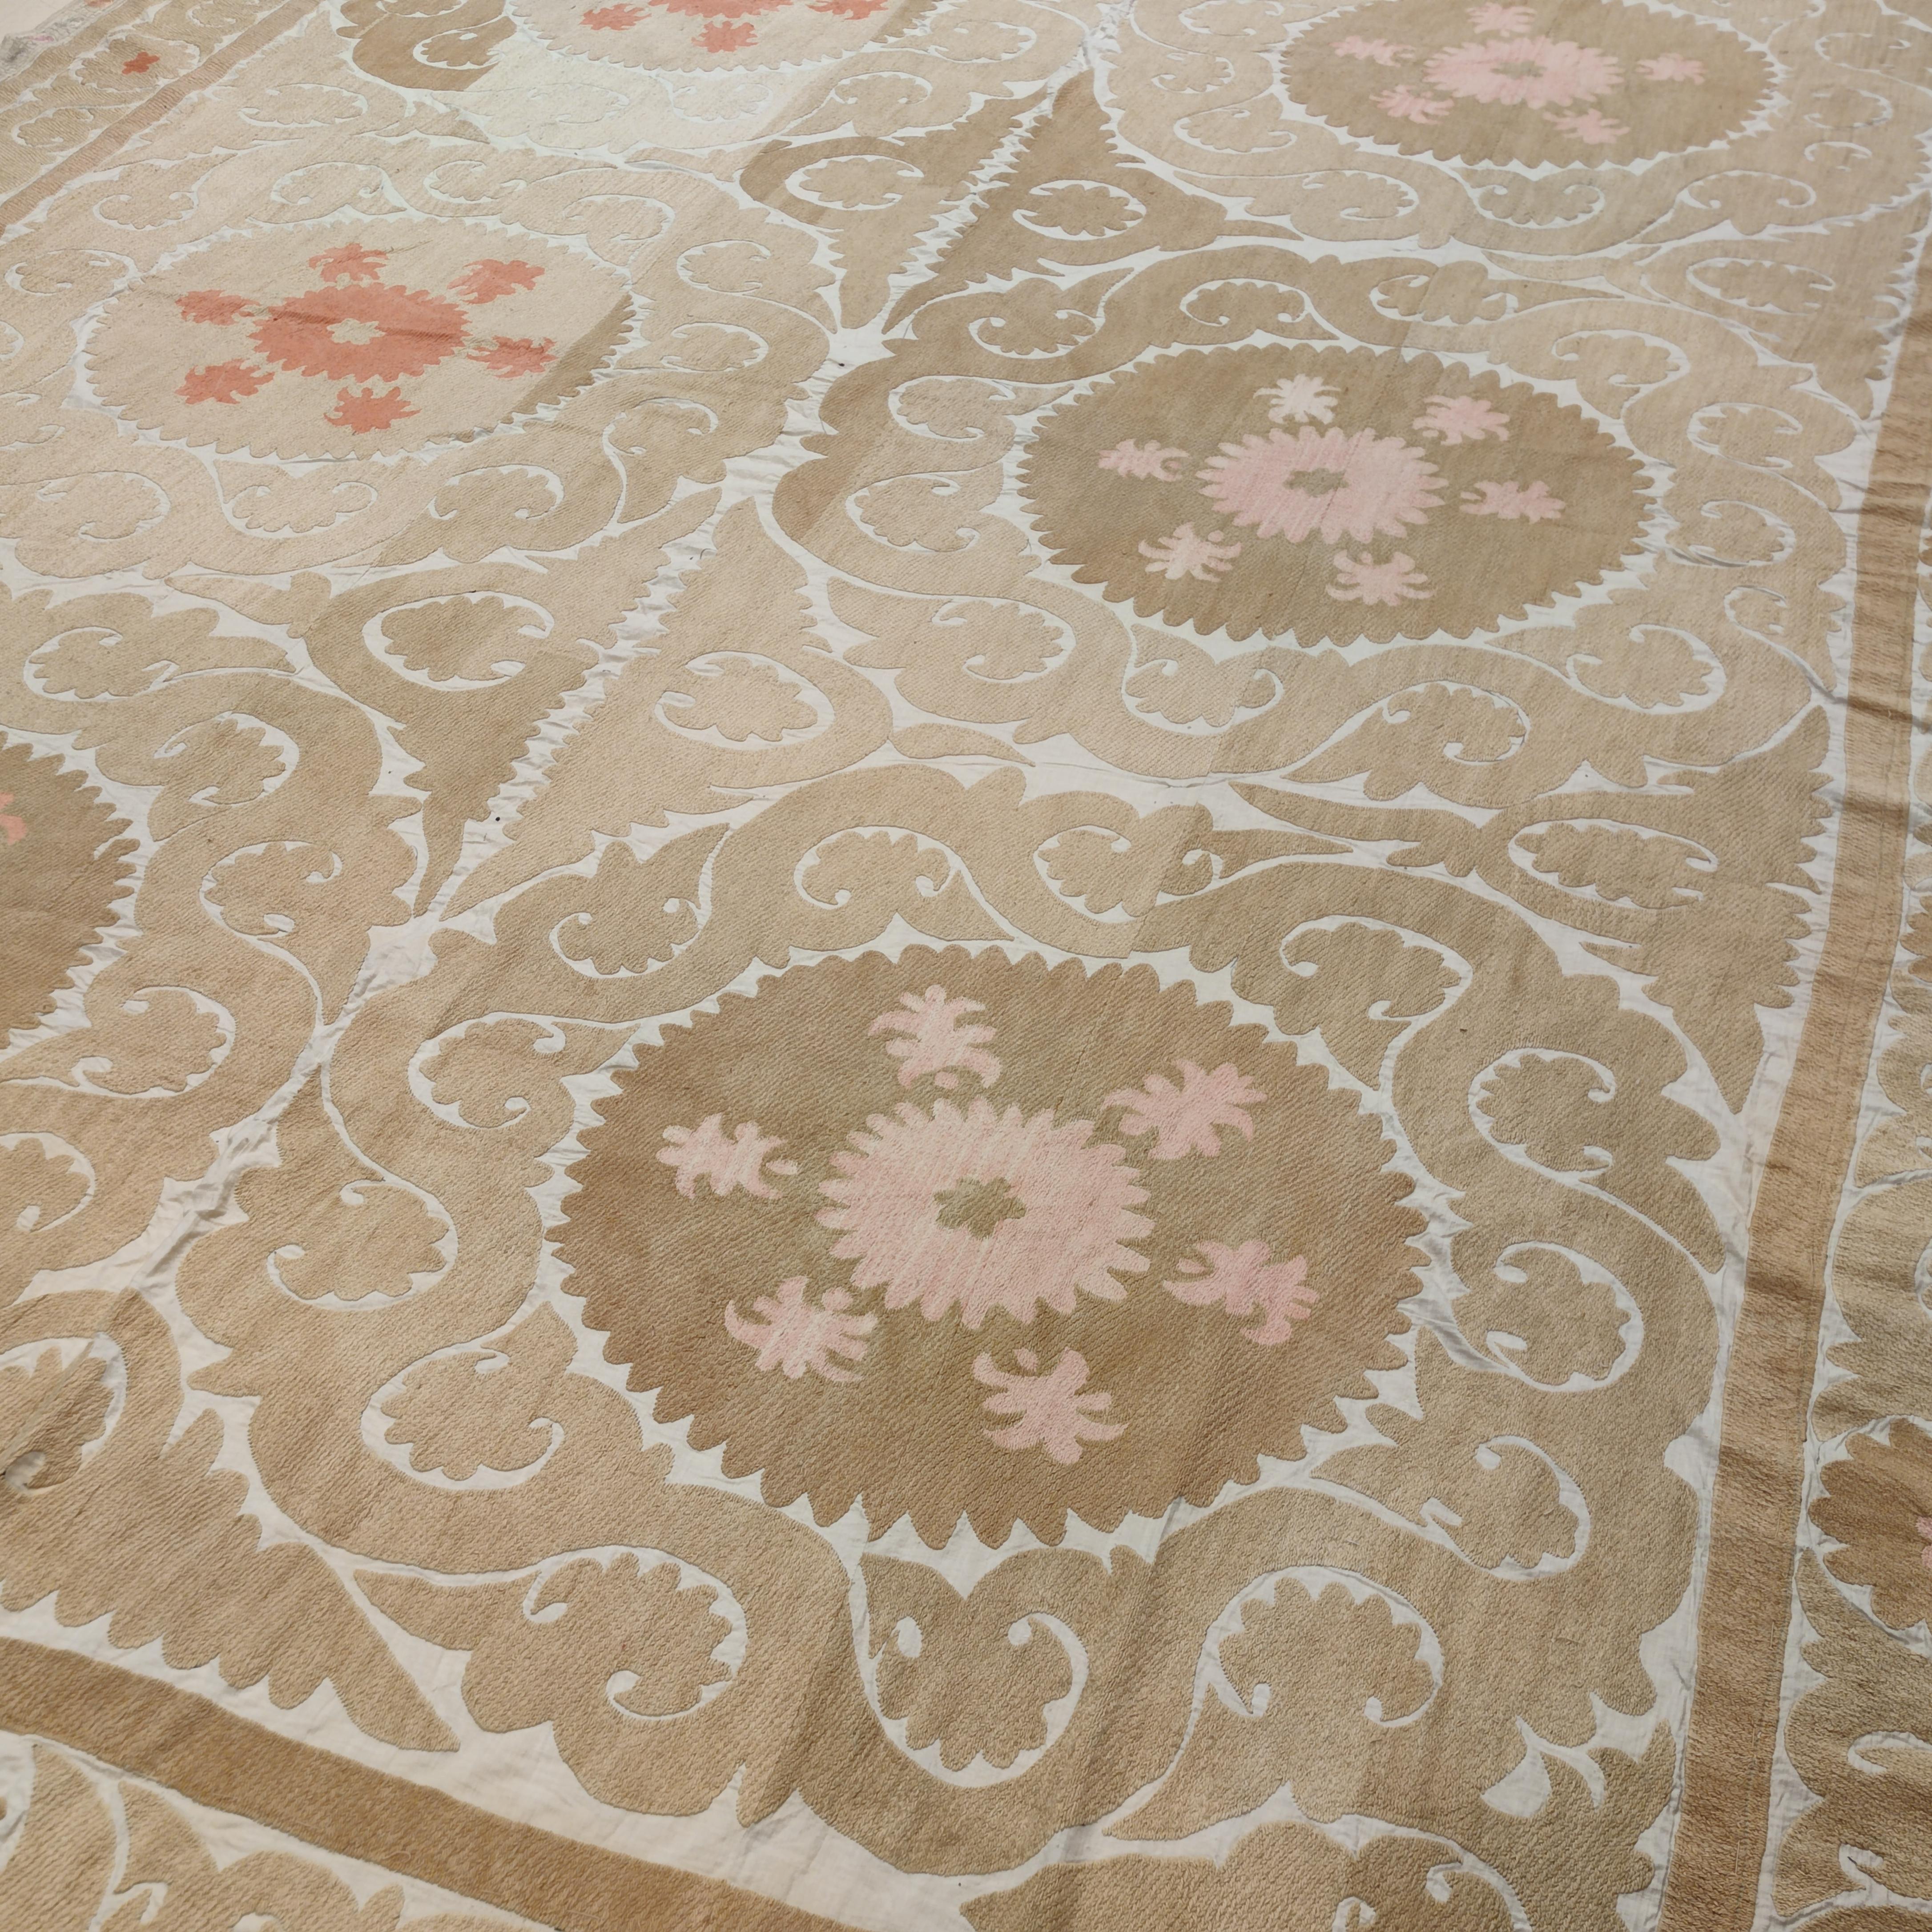 Die Suzani-Textilien aus Usbekistan sind die raffinierteste und eleganteste Erscheinungsform der zentralasiatischen Textilkunsttradition. Exquisite Stickereien wie diese wurden von jungen Frauen gewebt, um ihre Mitgift zu bereichern, weshalb sie